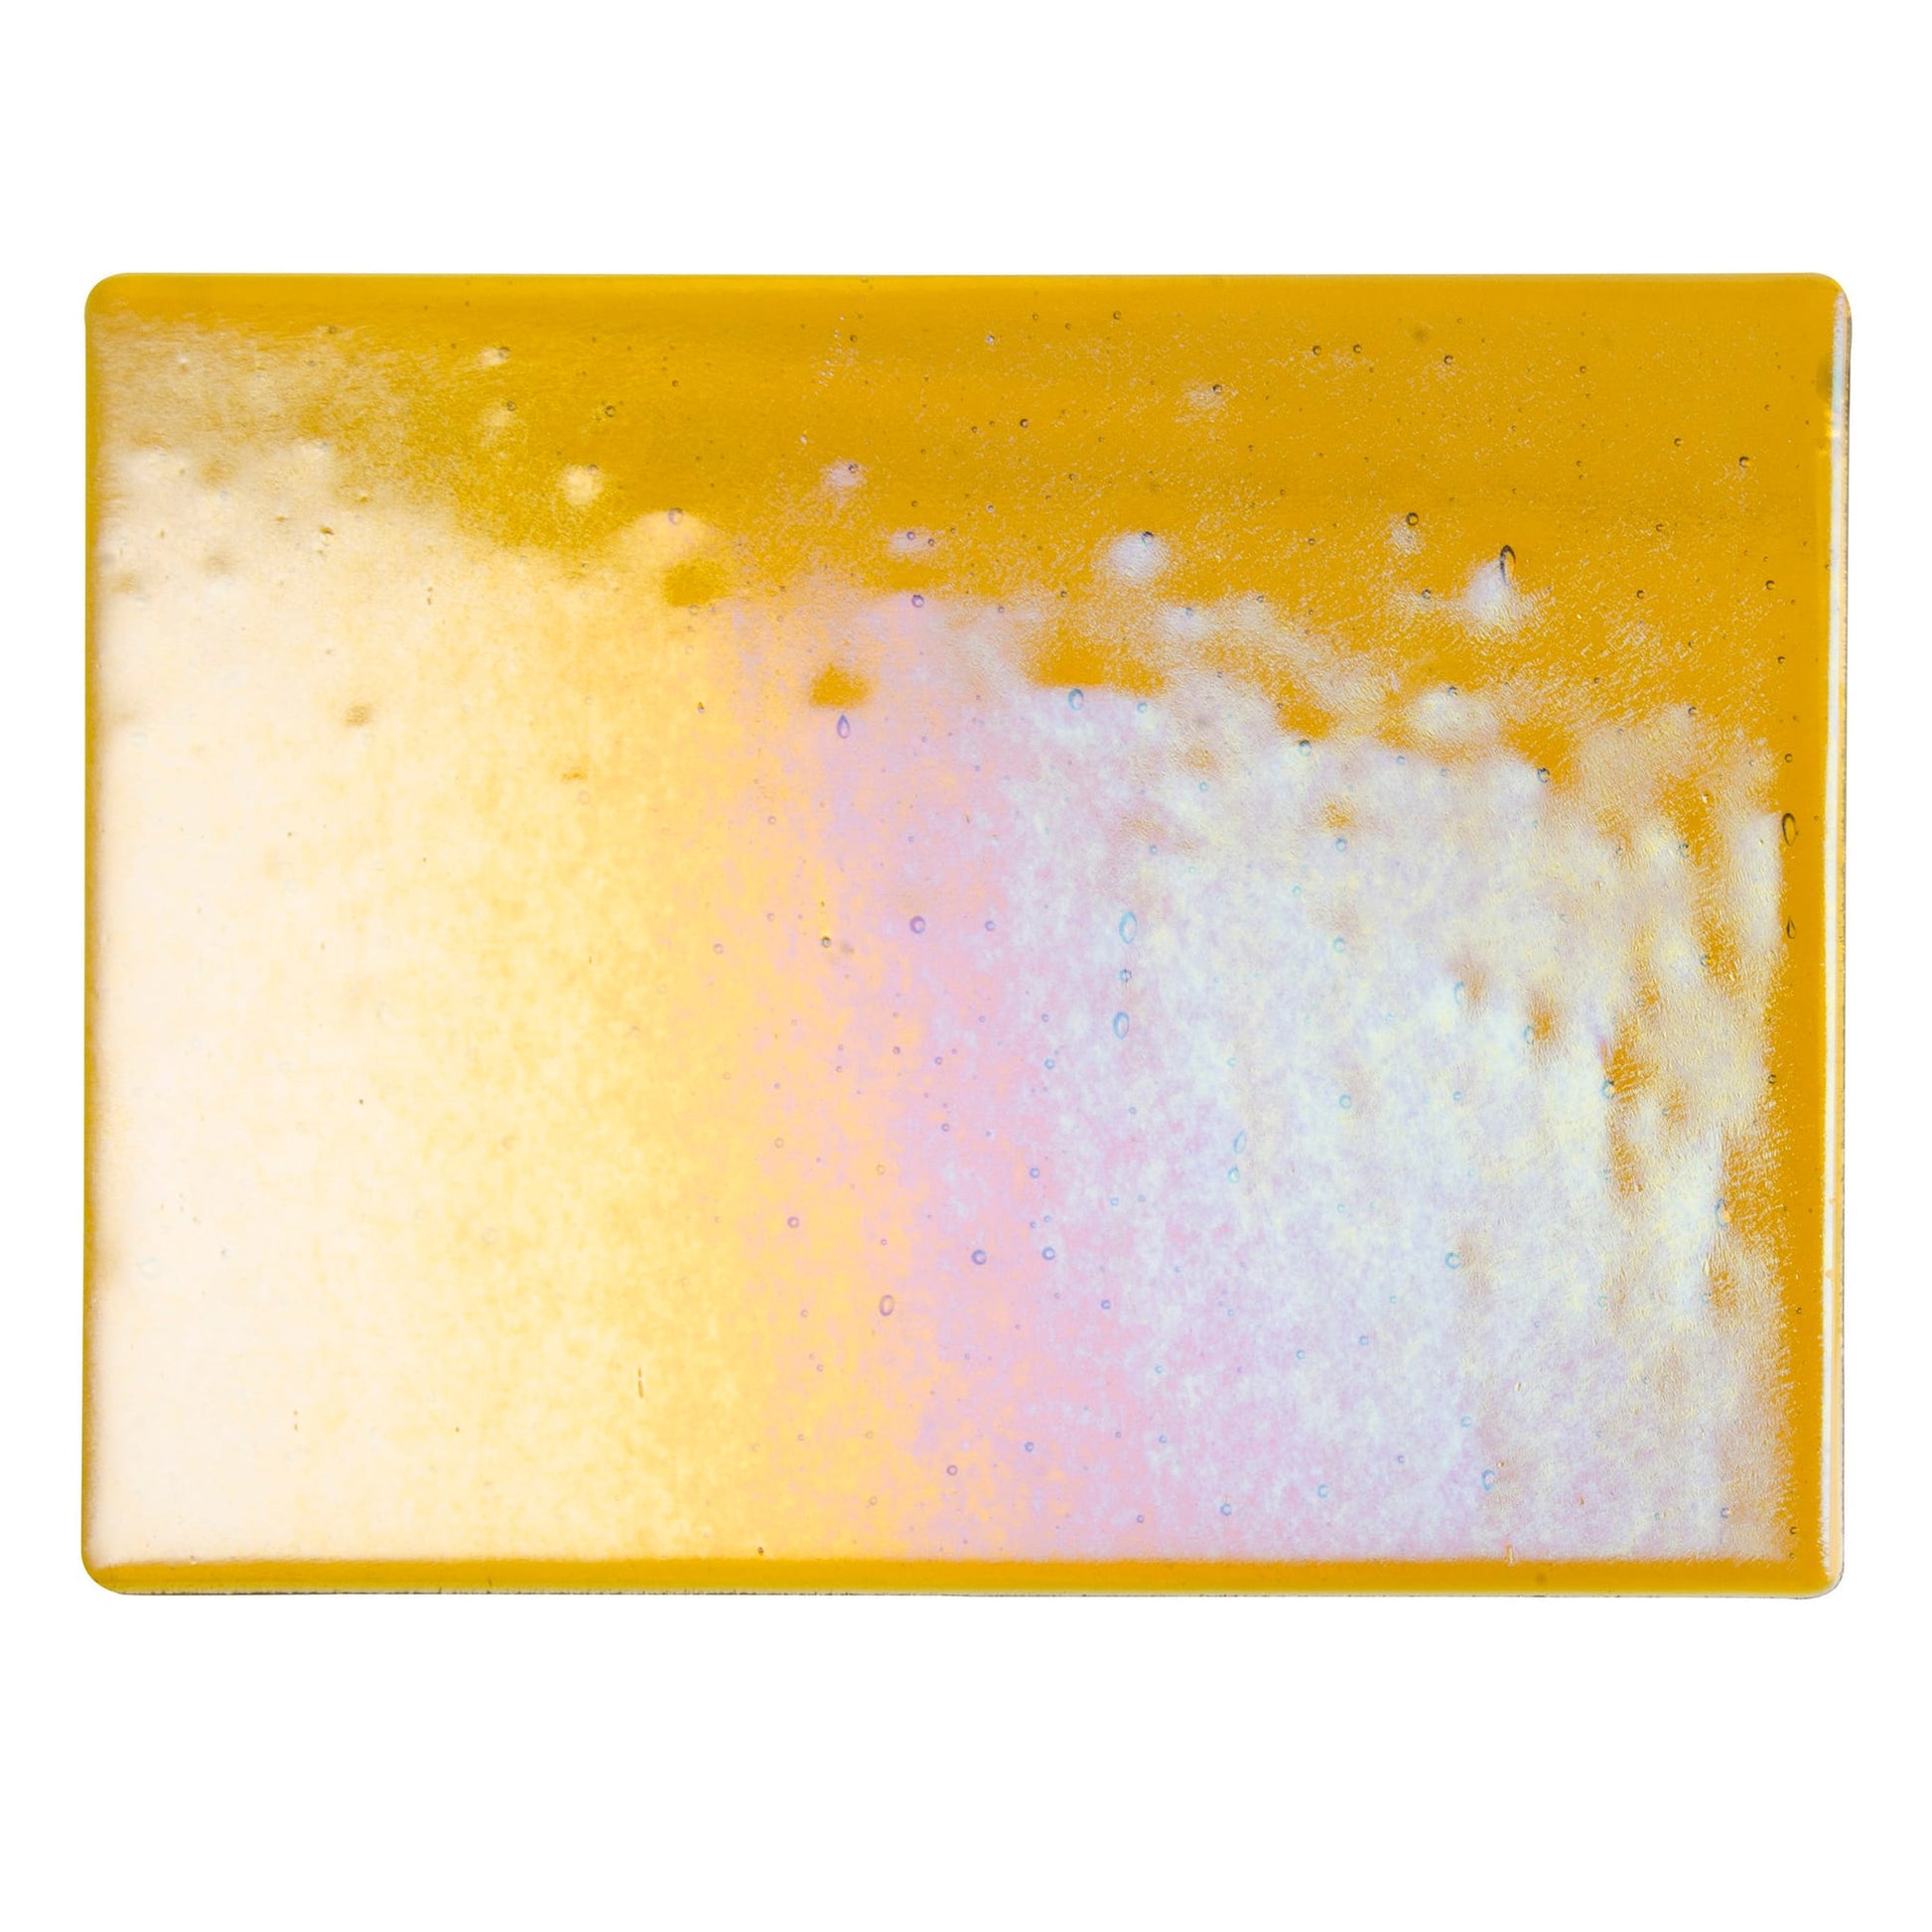 Bullseye COE90 Fusing Glass 001138 Dark Amber, Iridescent, Rainbow Half Sheet